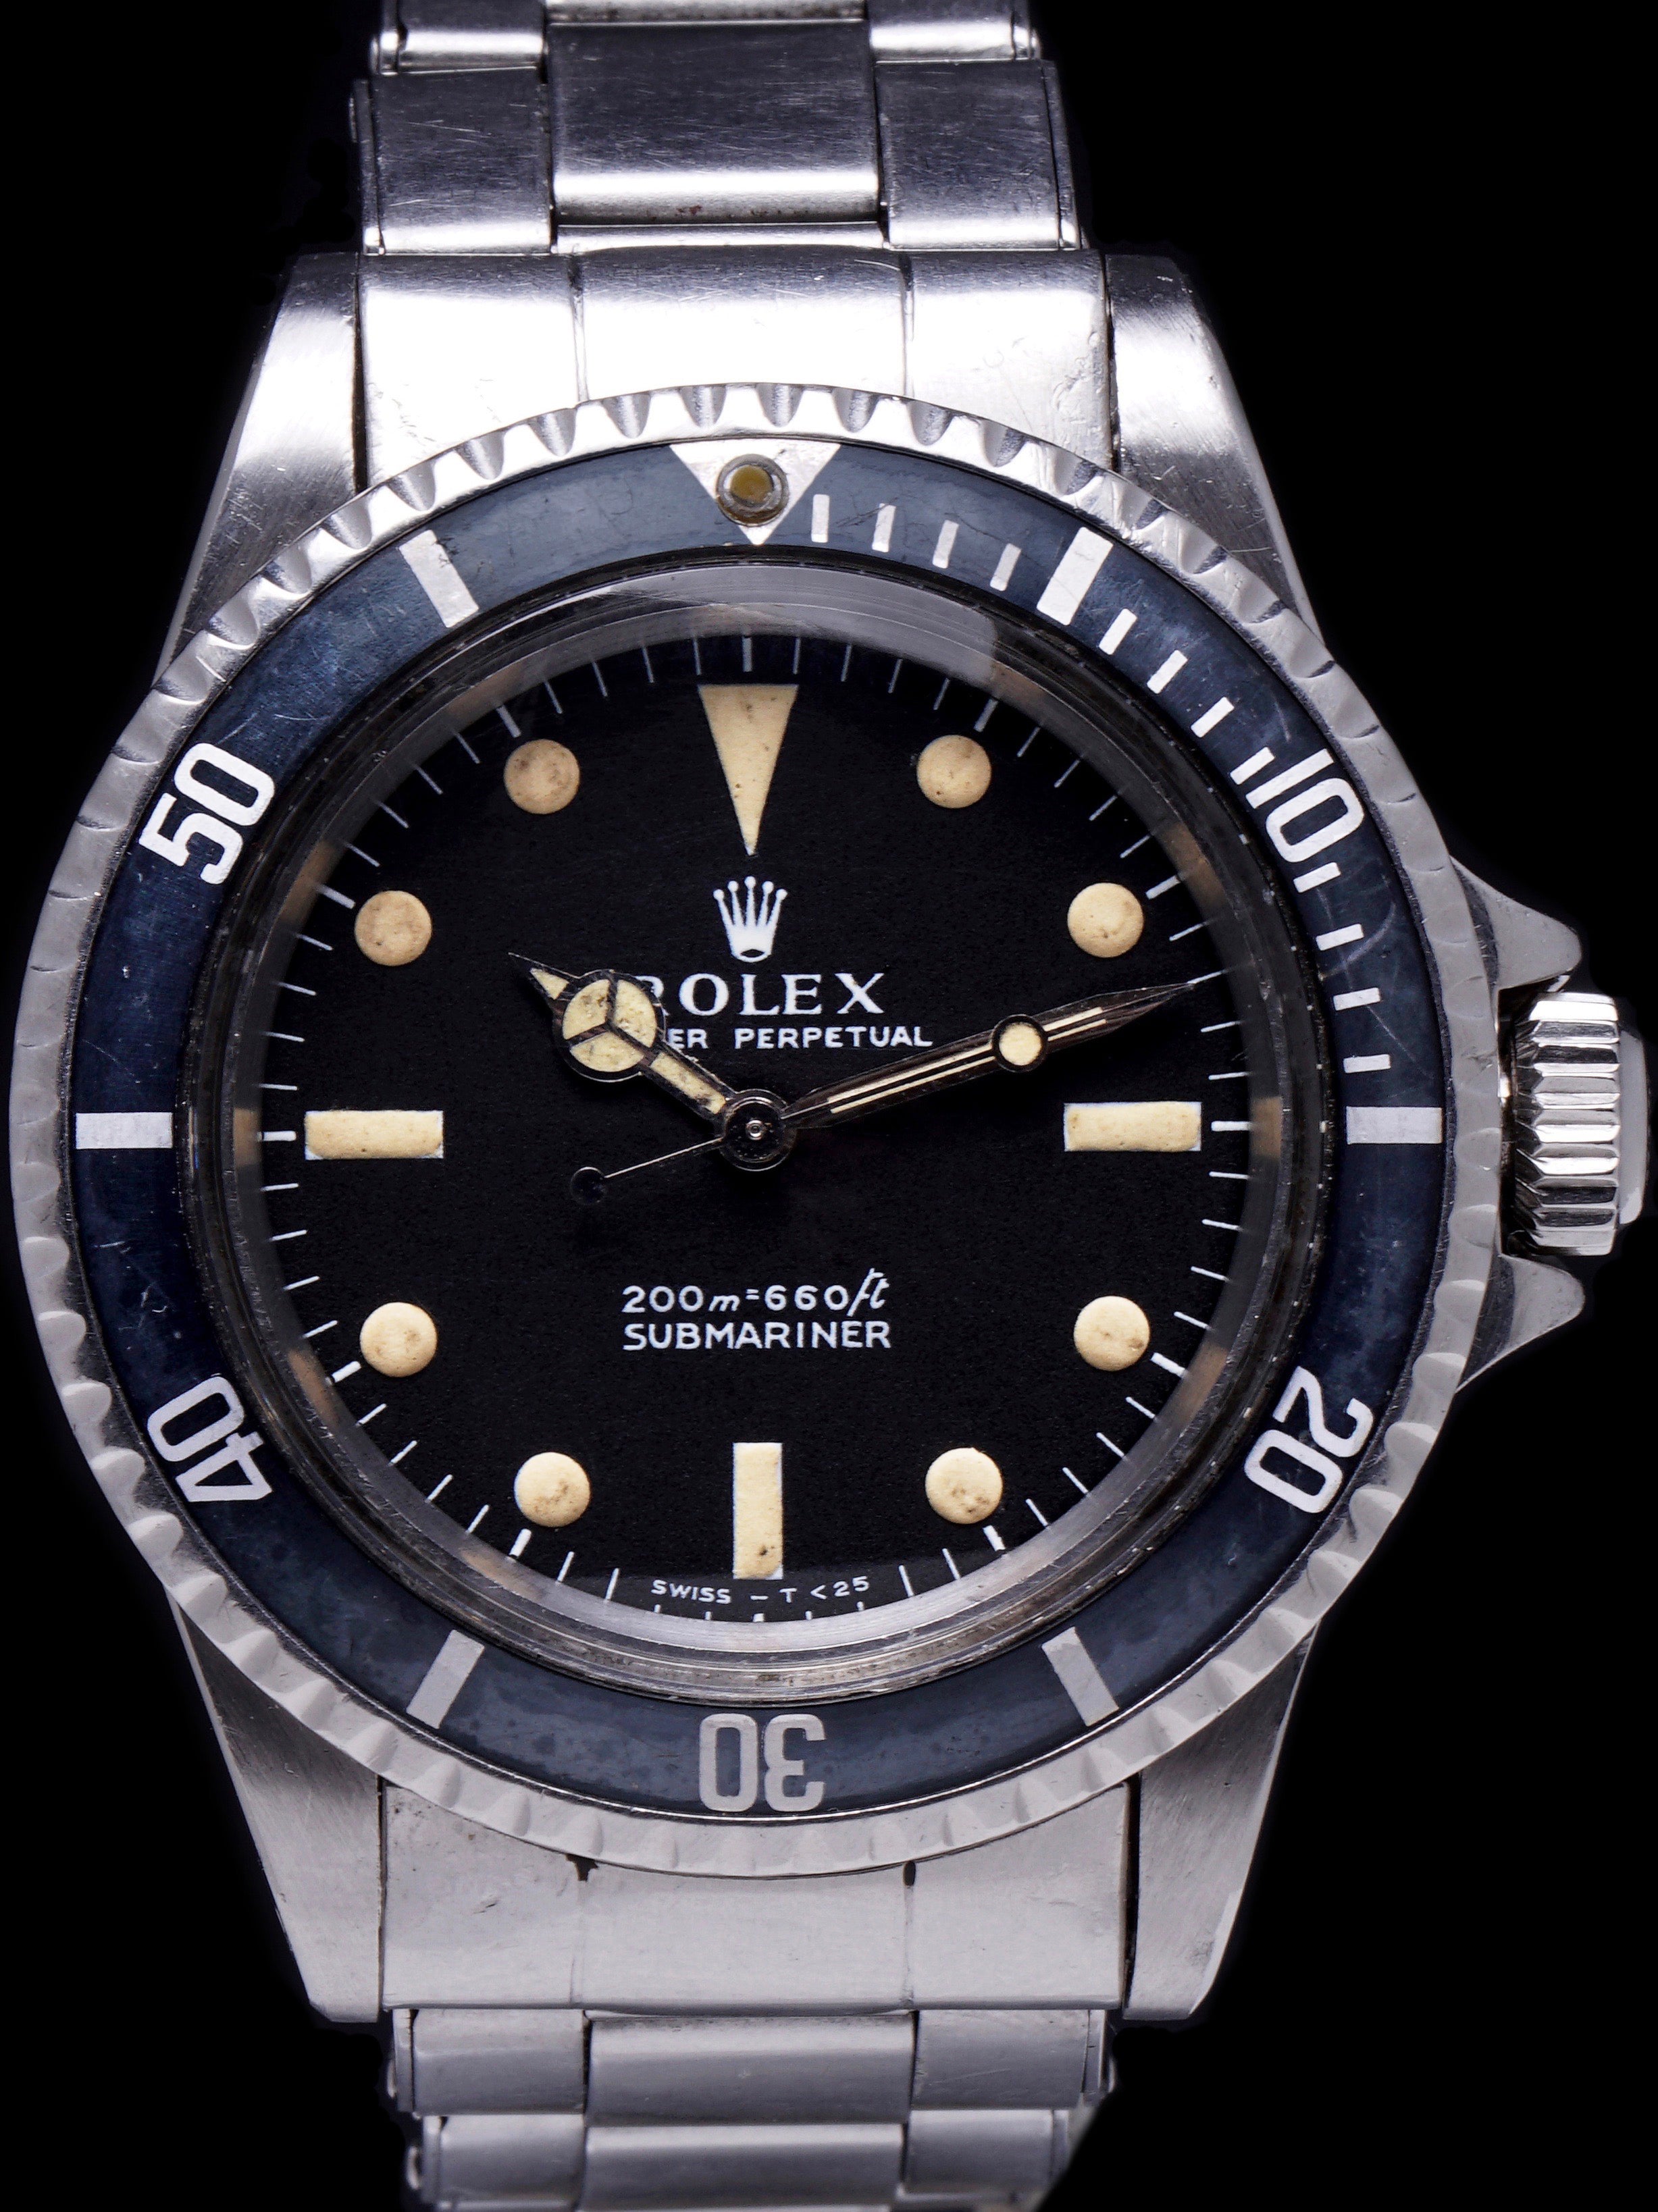 1969 Rolex Submariner (Ref. 5513) "Meters First"